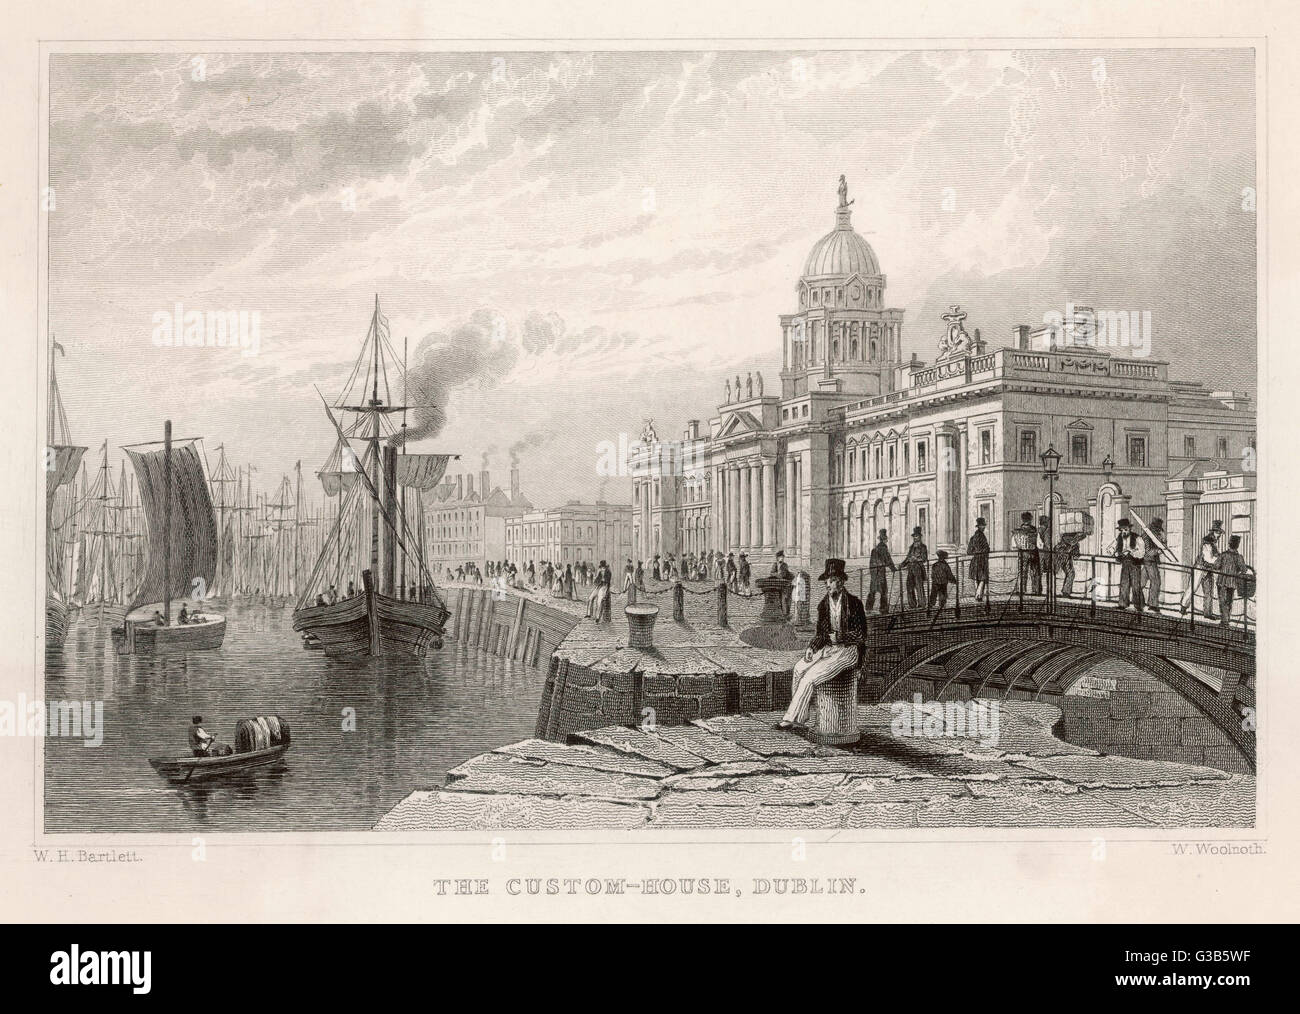 CUSTOM HOUSE/DUBLIN 1840 Stock Photo